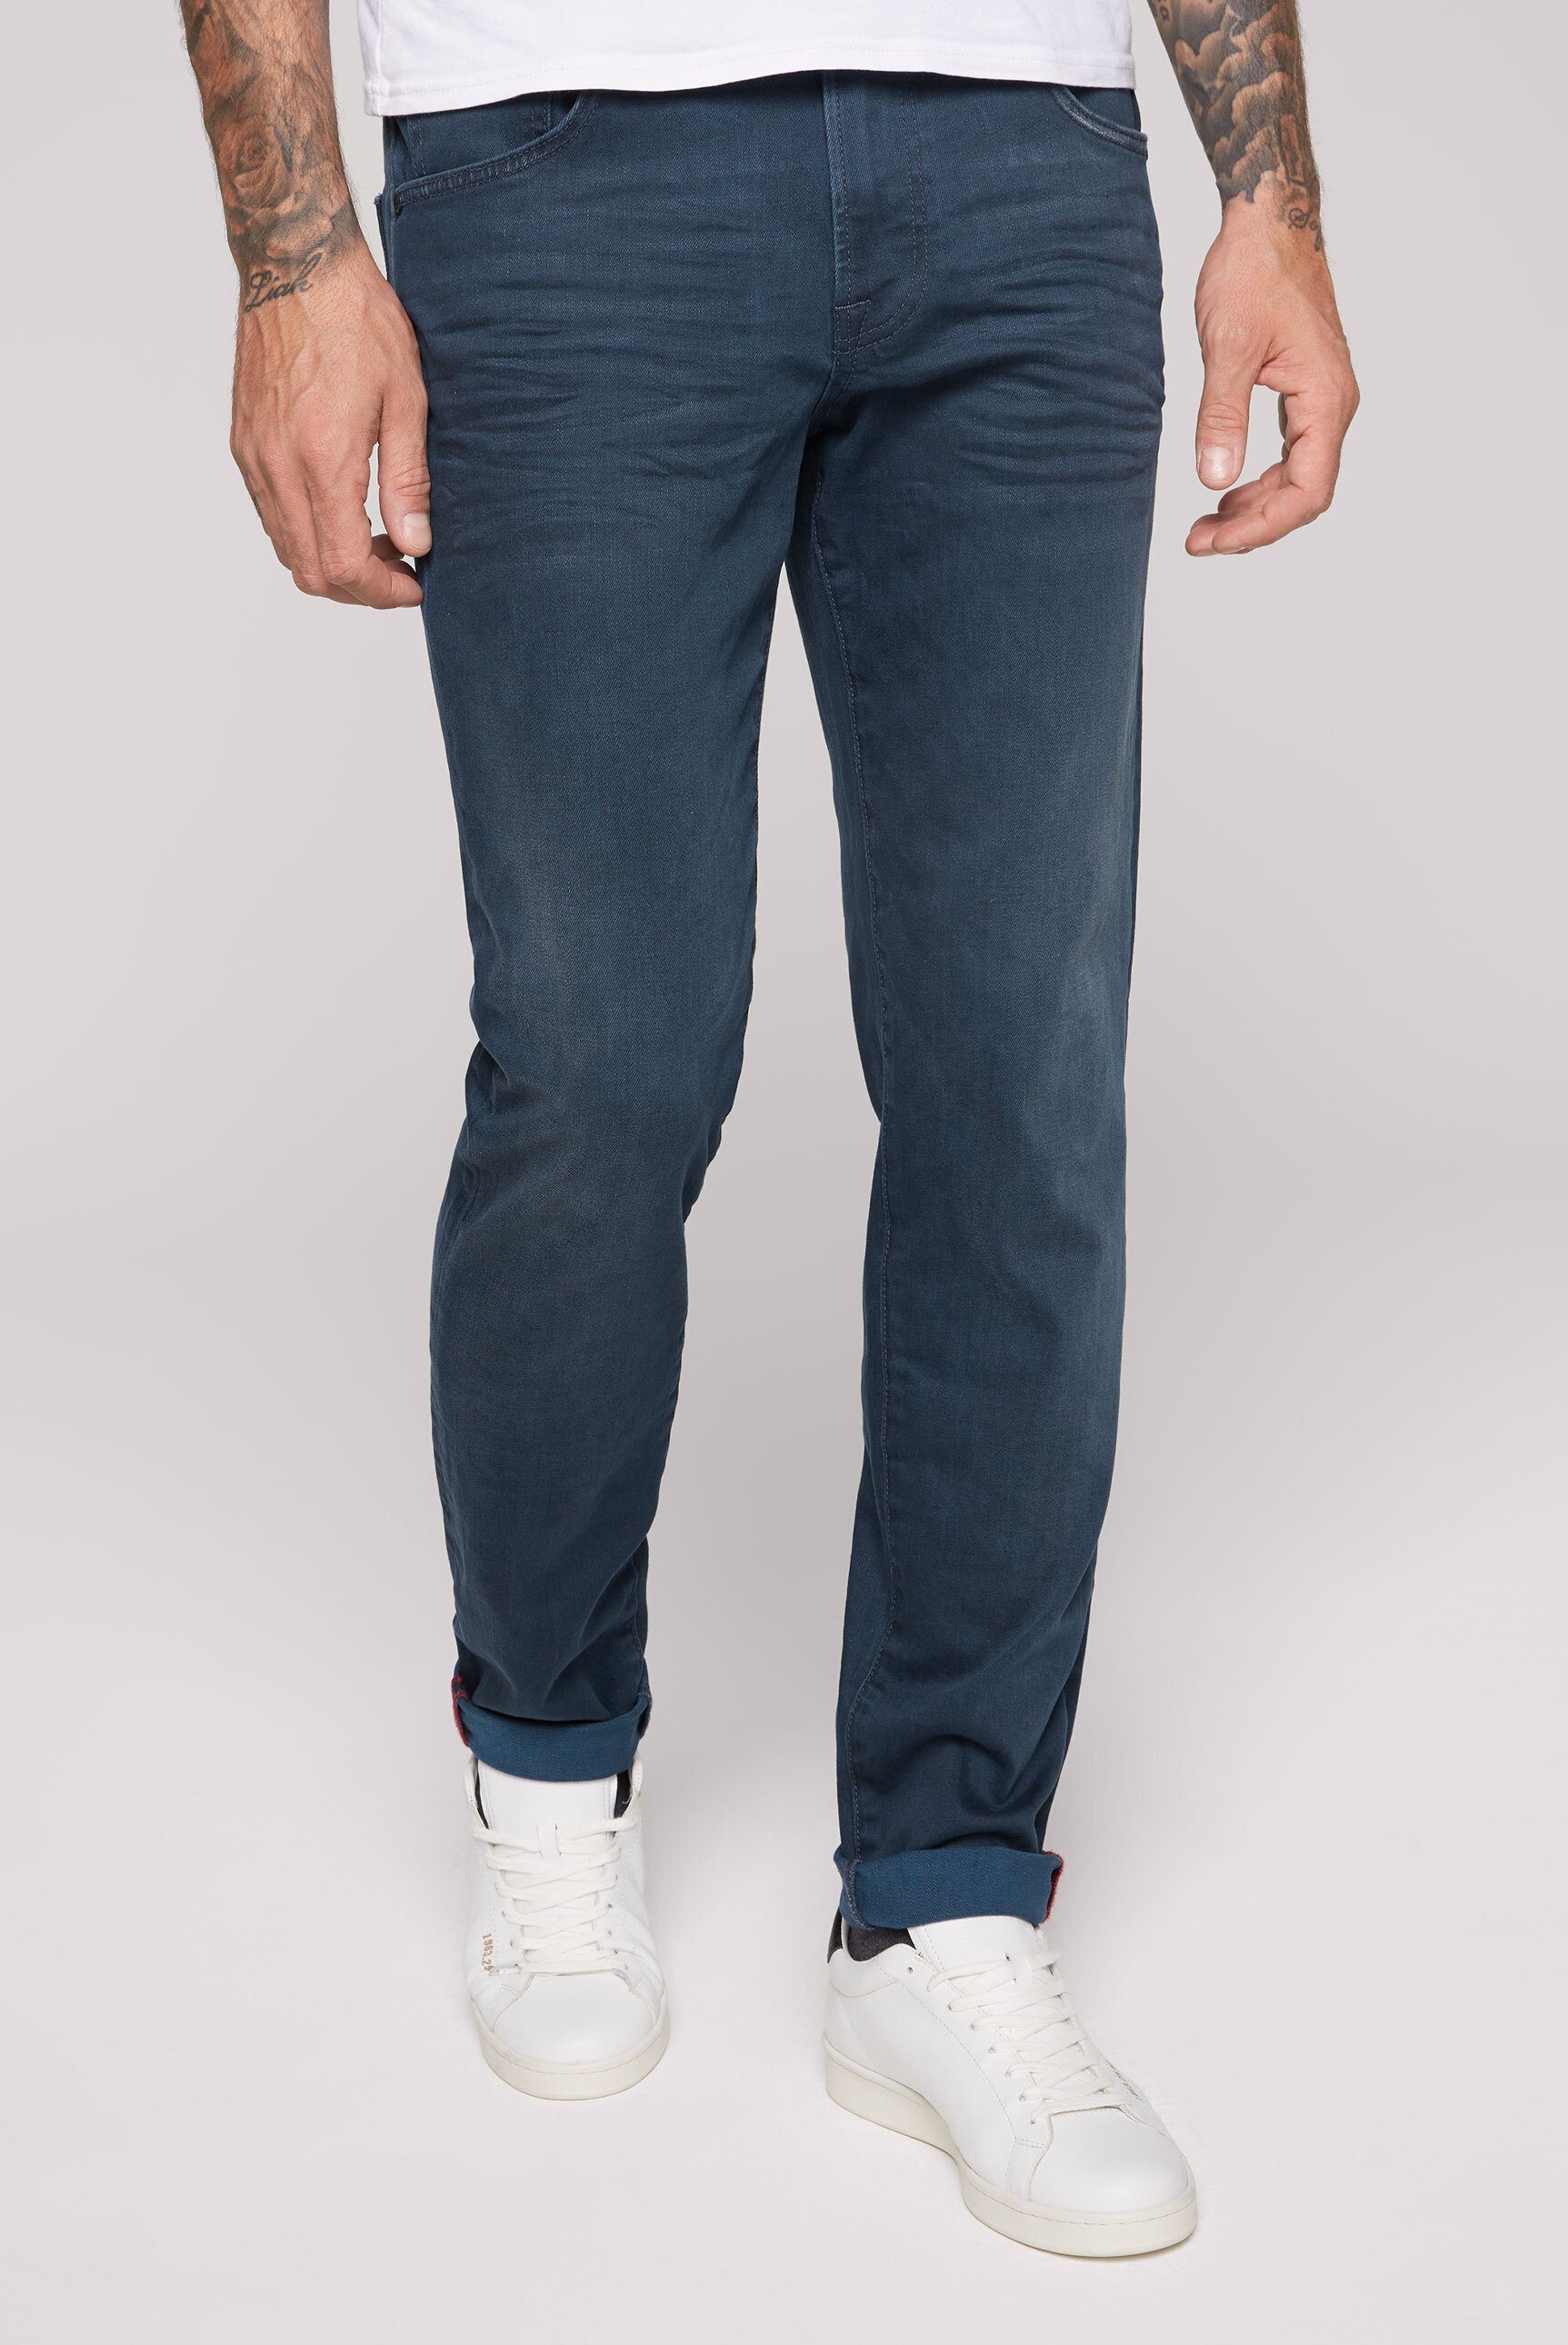 CAMP DAVID Regular-fit-Jeans mit hoher Leibhöhe, Reguläre Oberschenkelweite